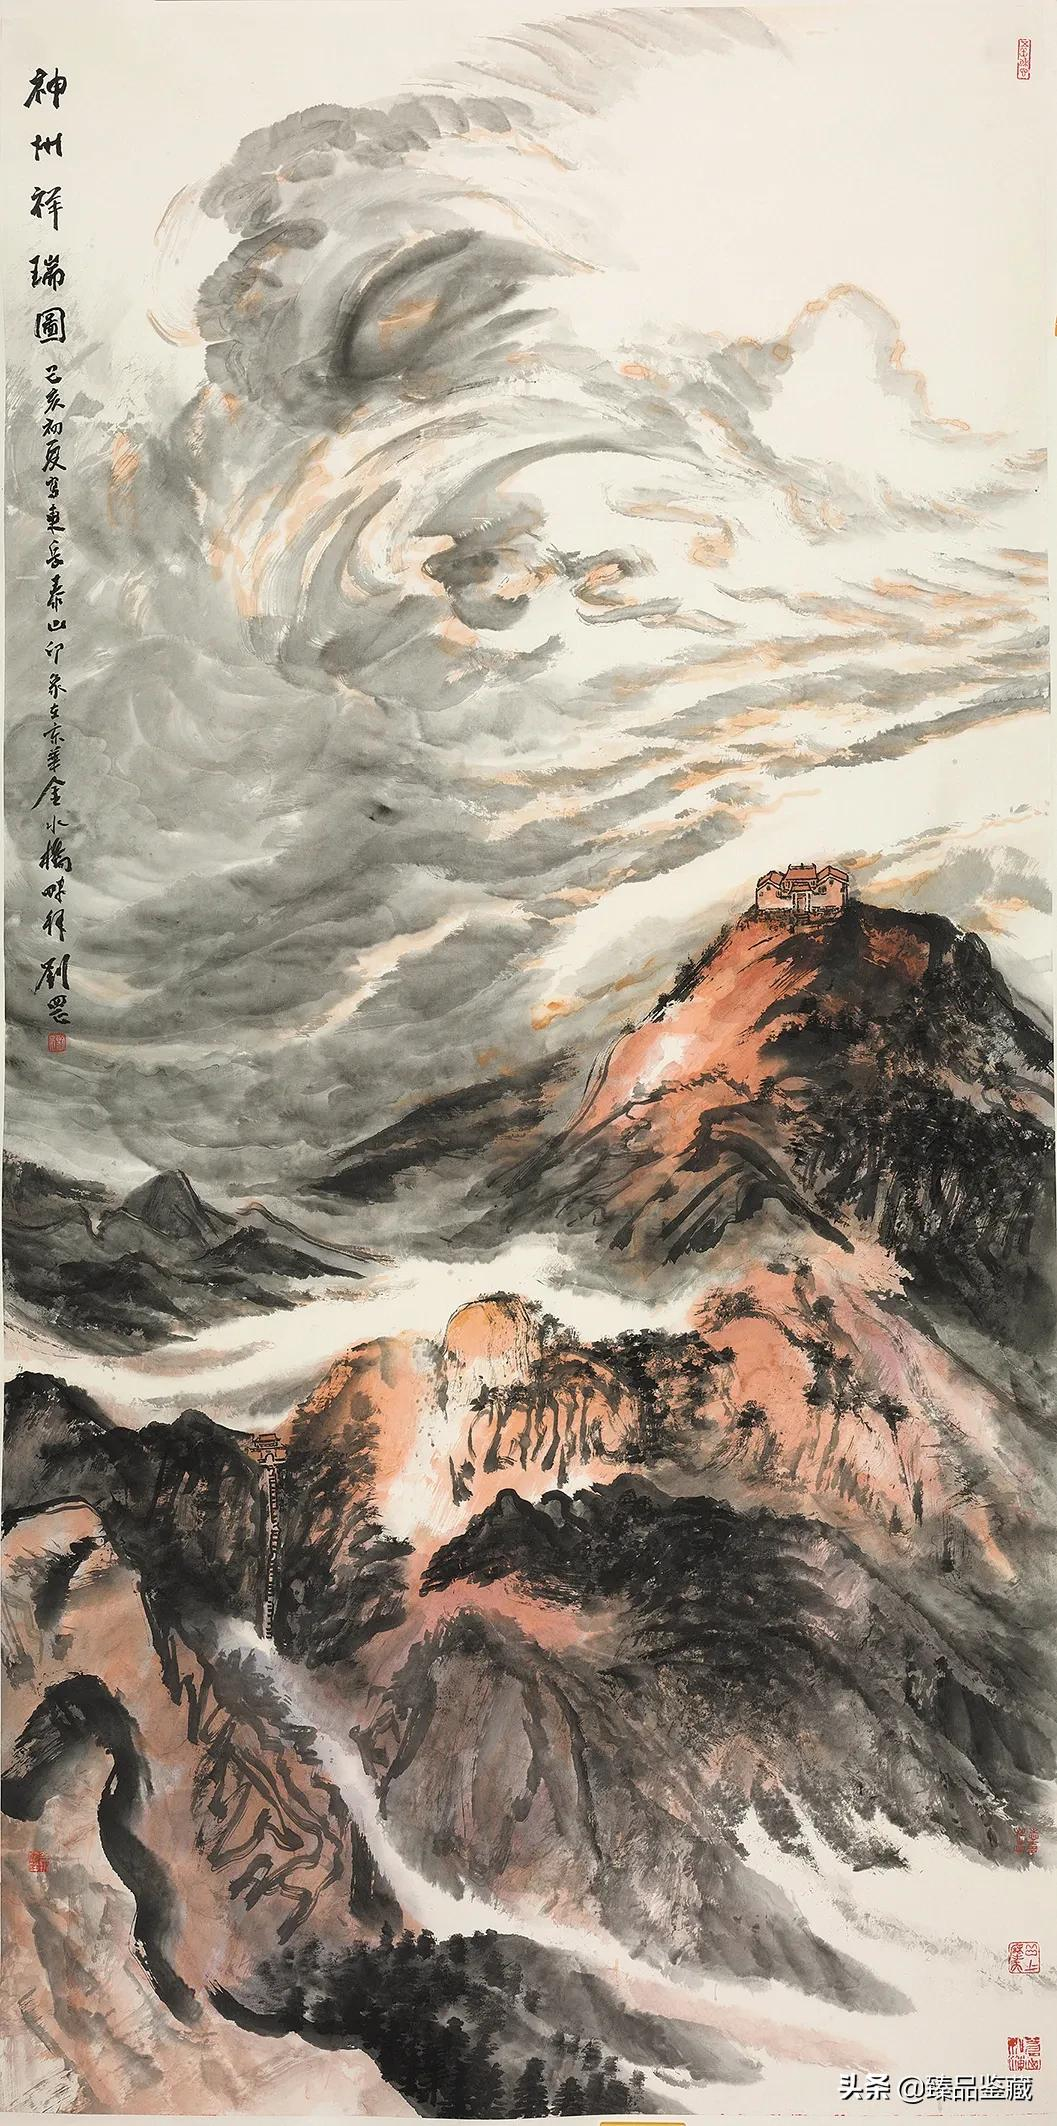 胸中笔墨 腕底山川——著名画家刘罡的山水画新形态